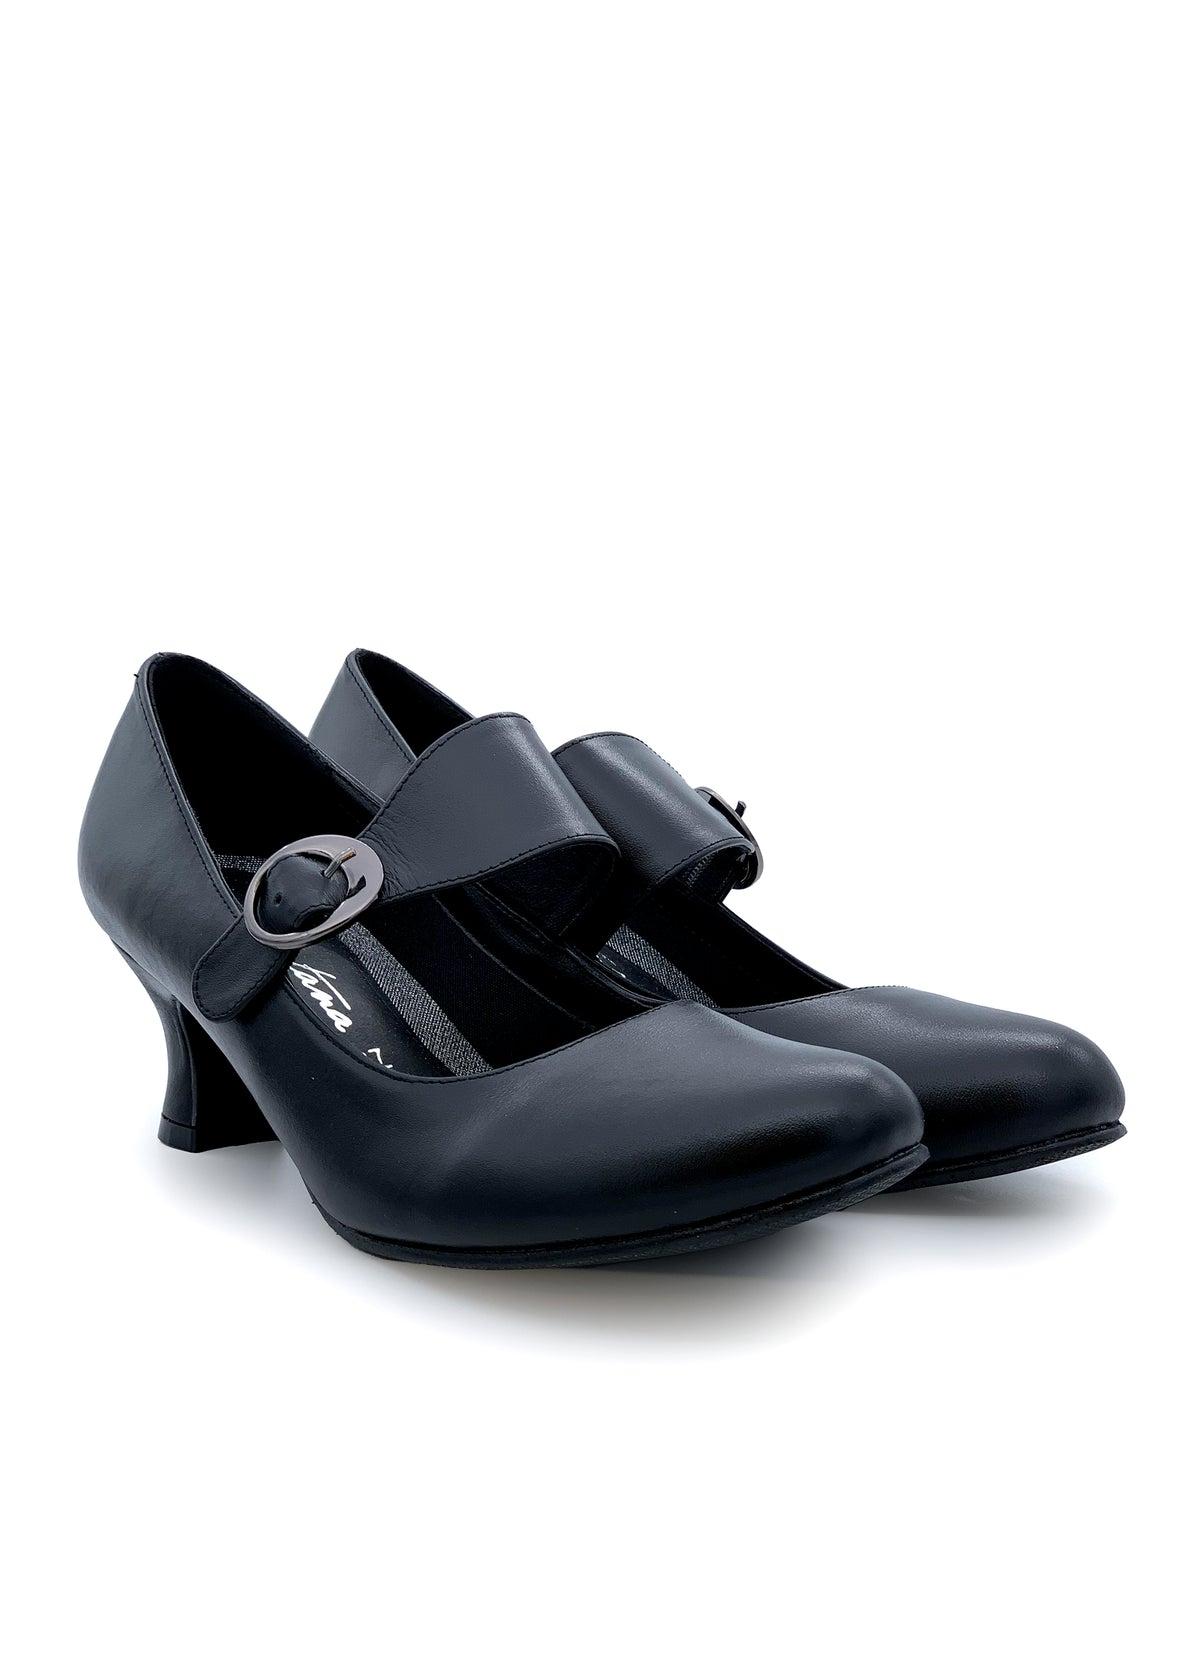 Skor med öppen tå med bred spänne - svart läder